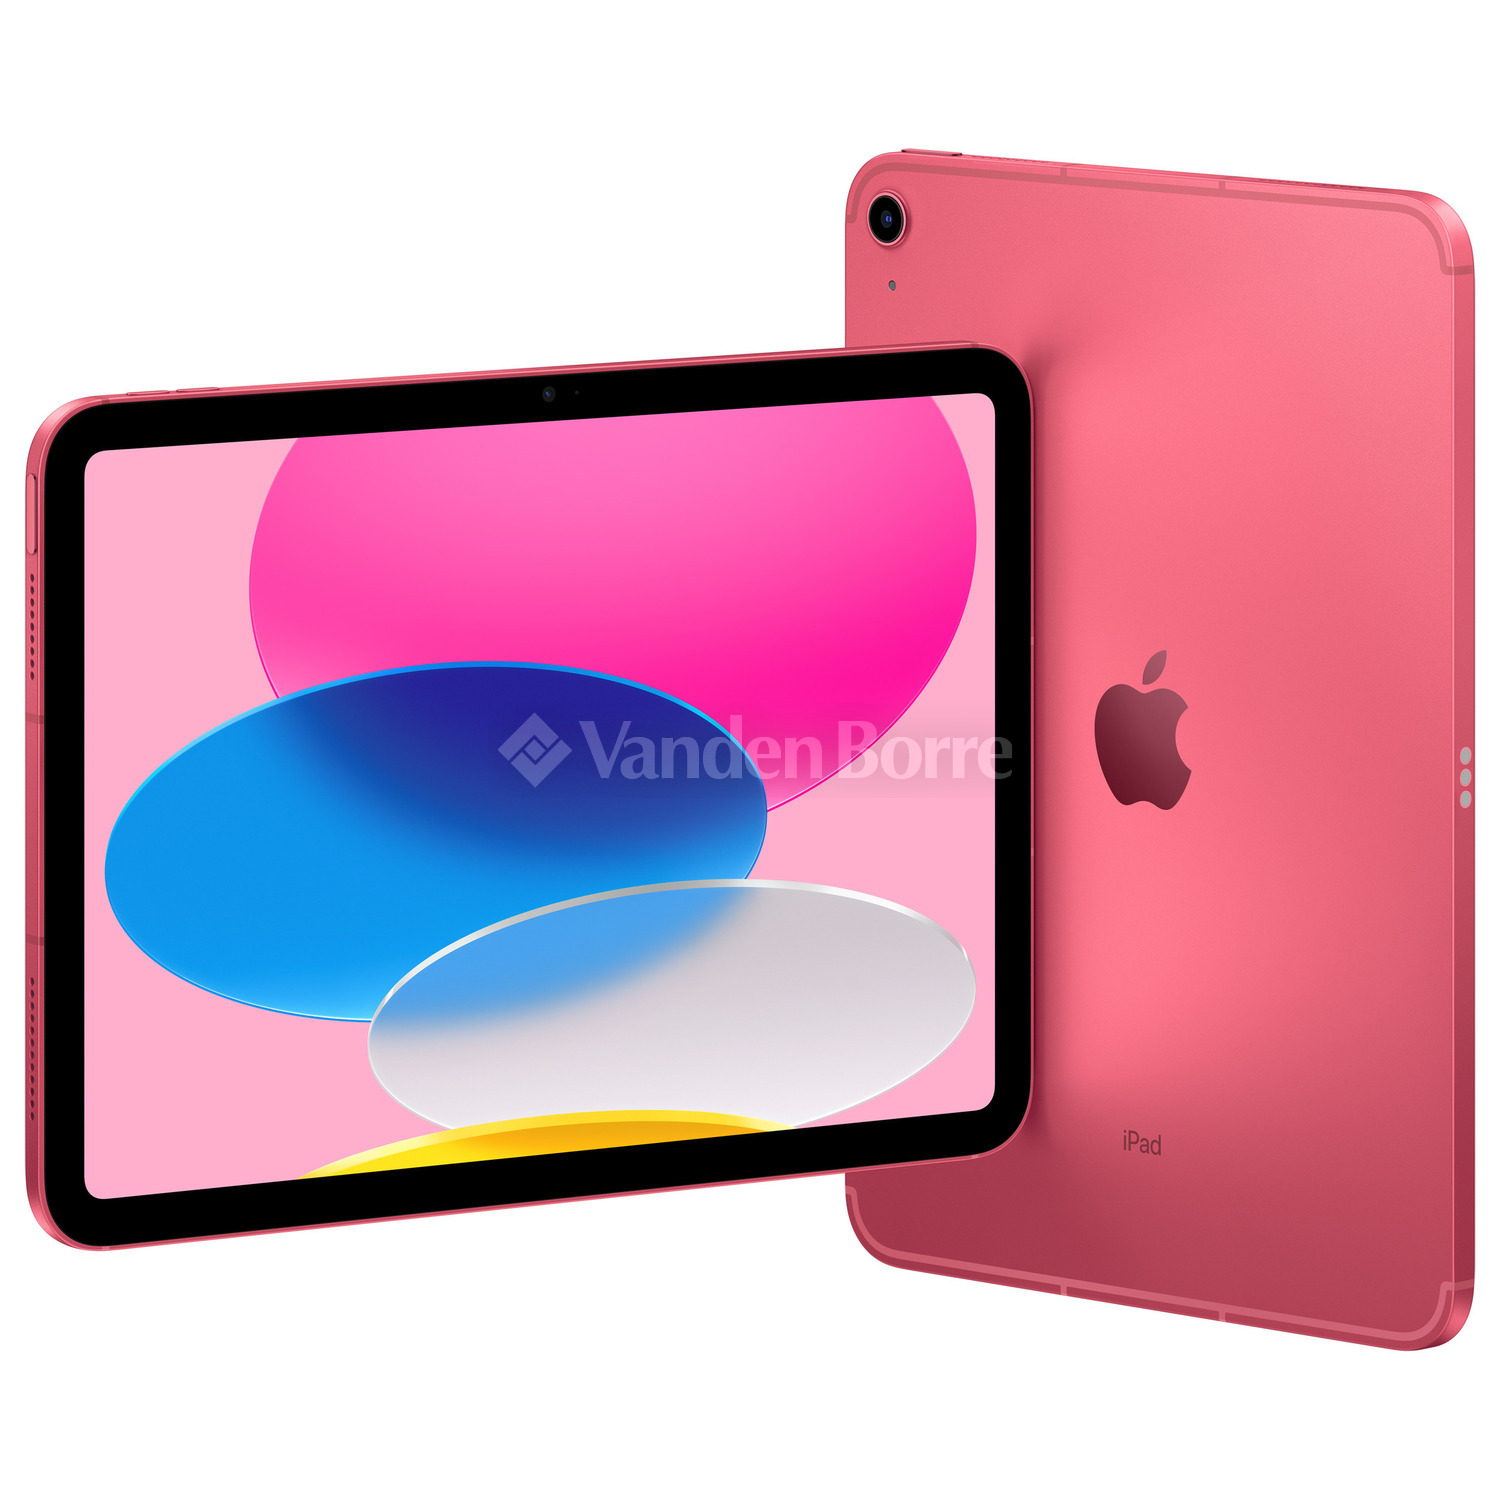 iPad 10 (2022) : la nouvelle tablette abordable d'Apple baisse enfin de  prix lors des soldes